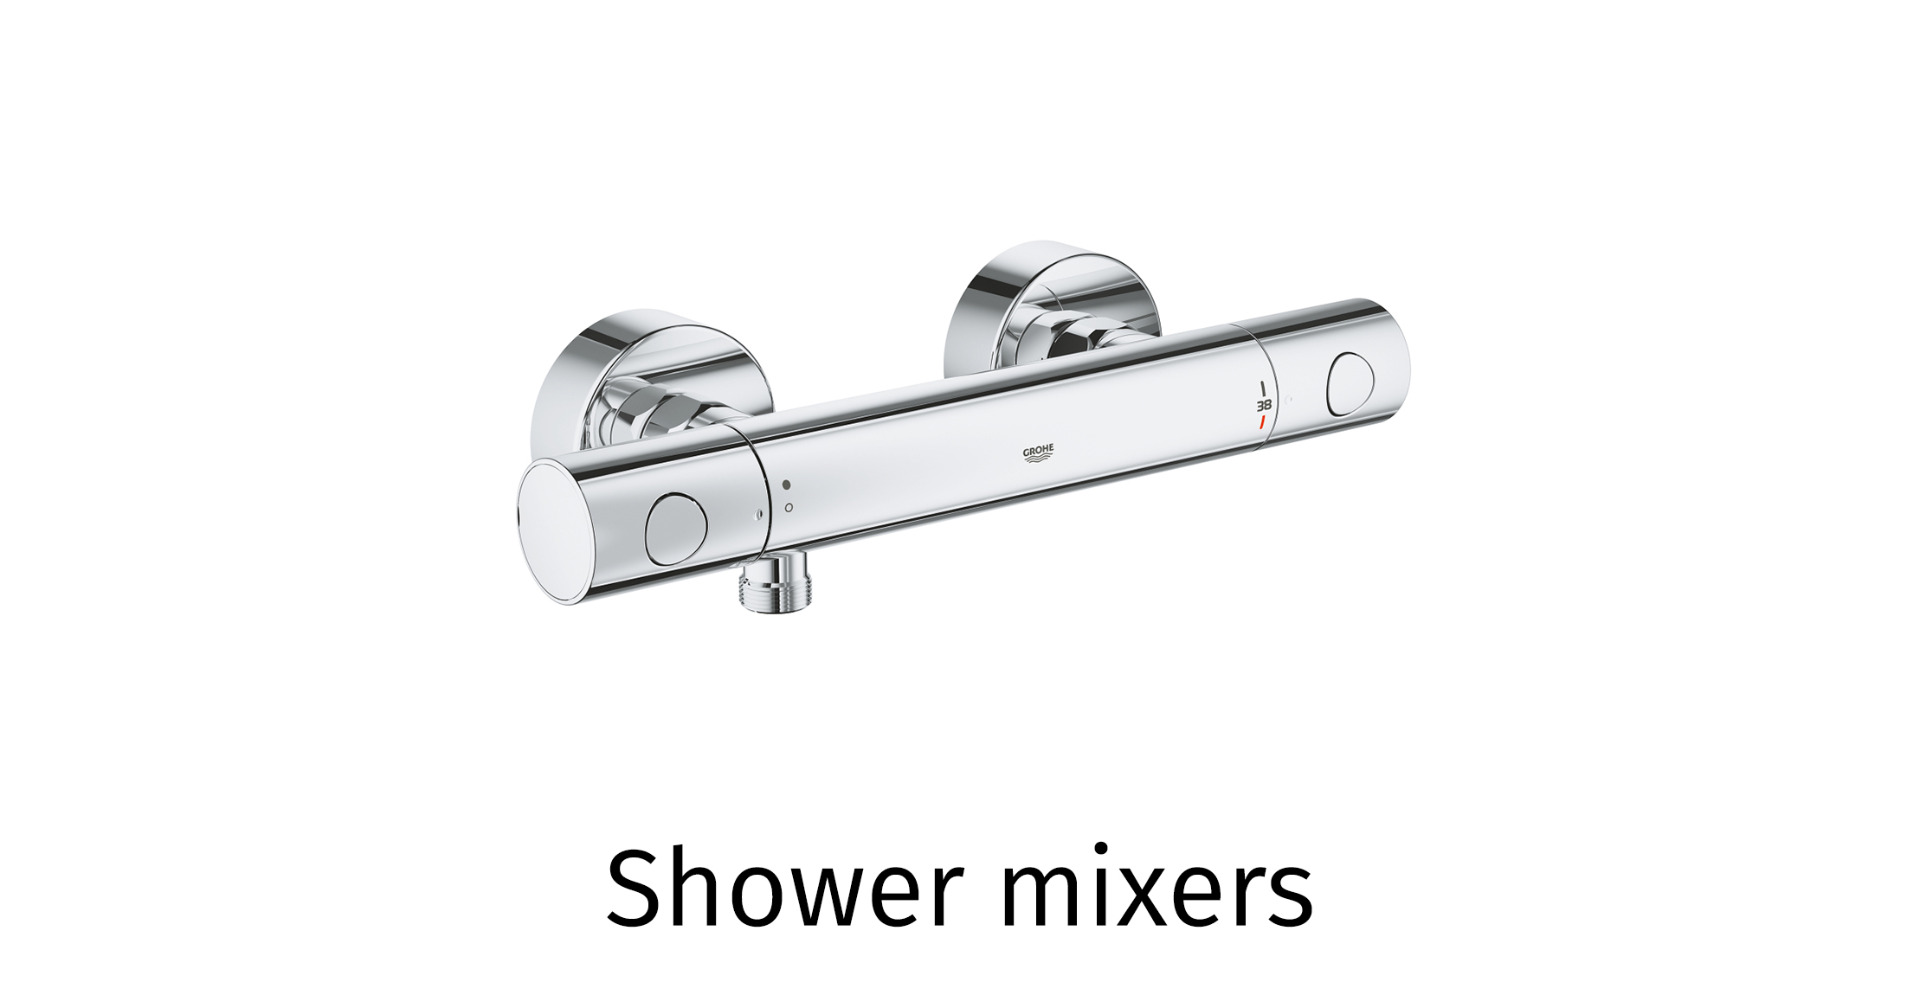 Shower mixers